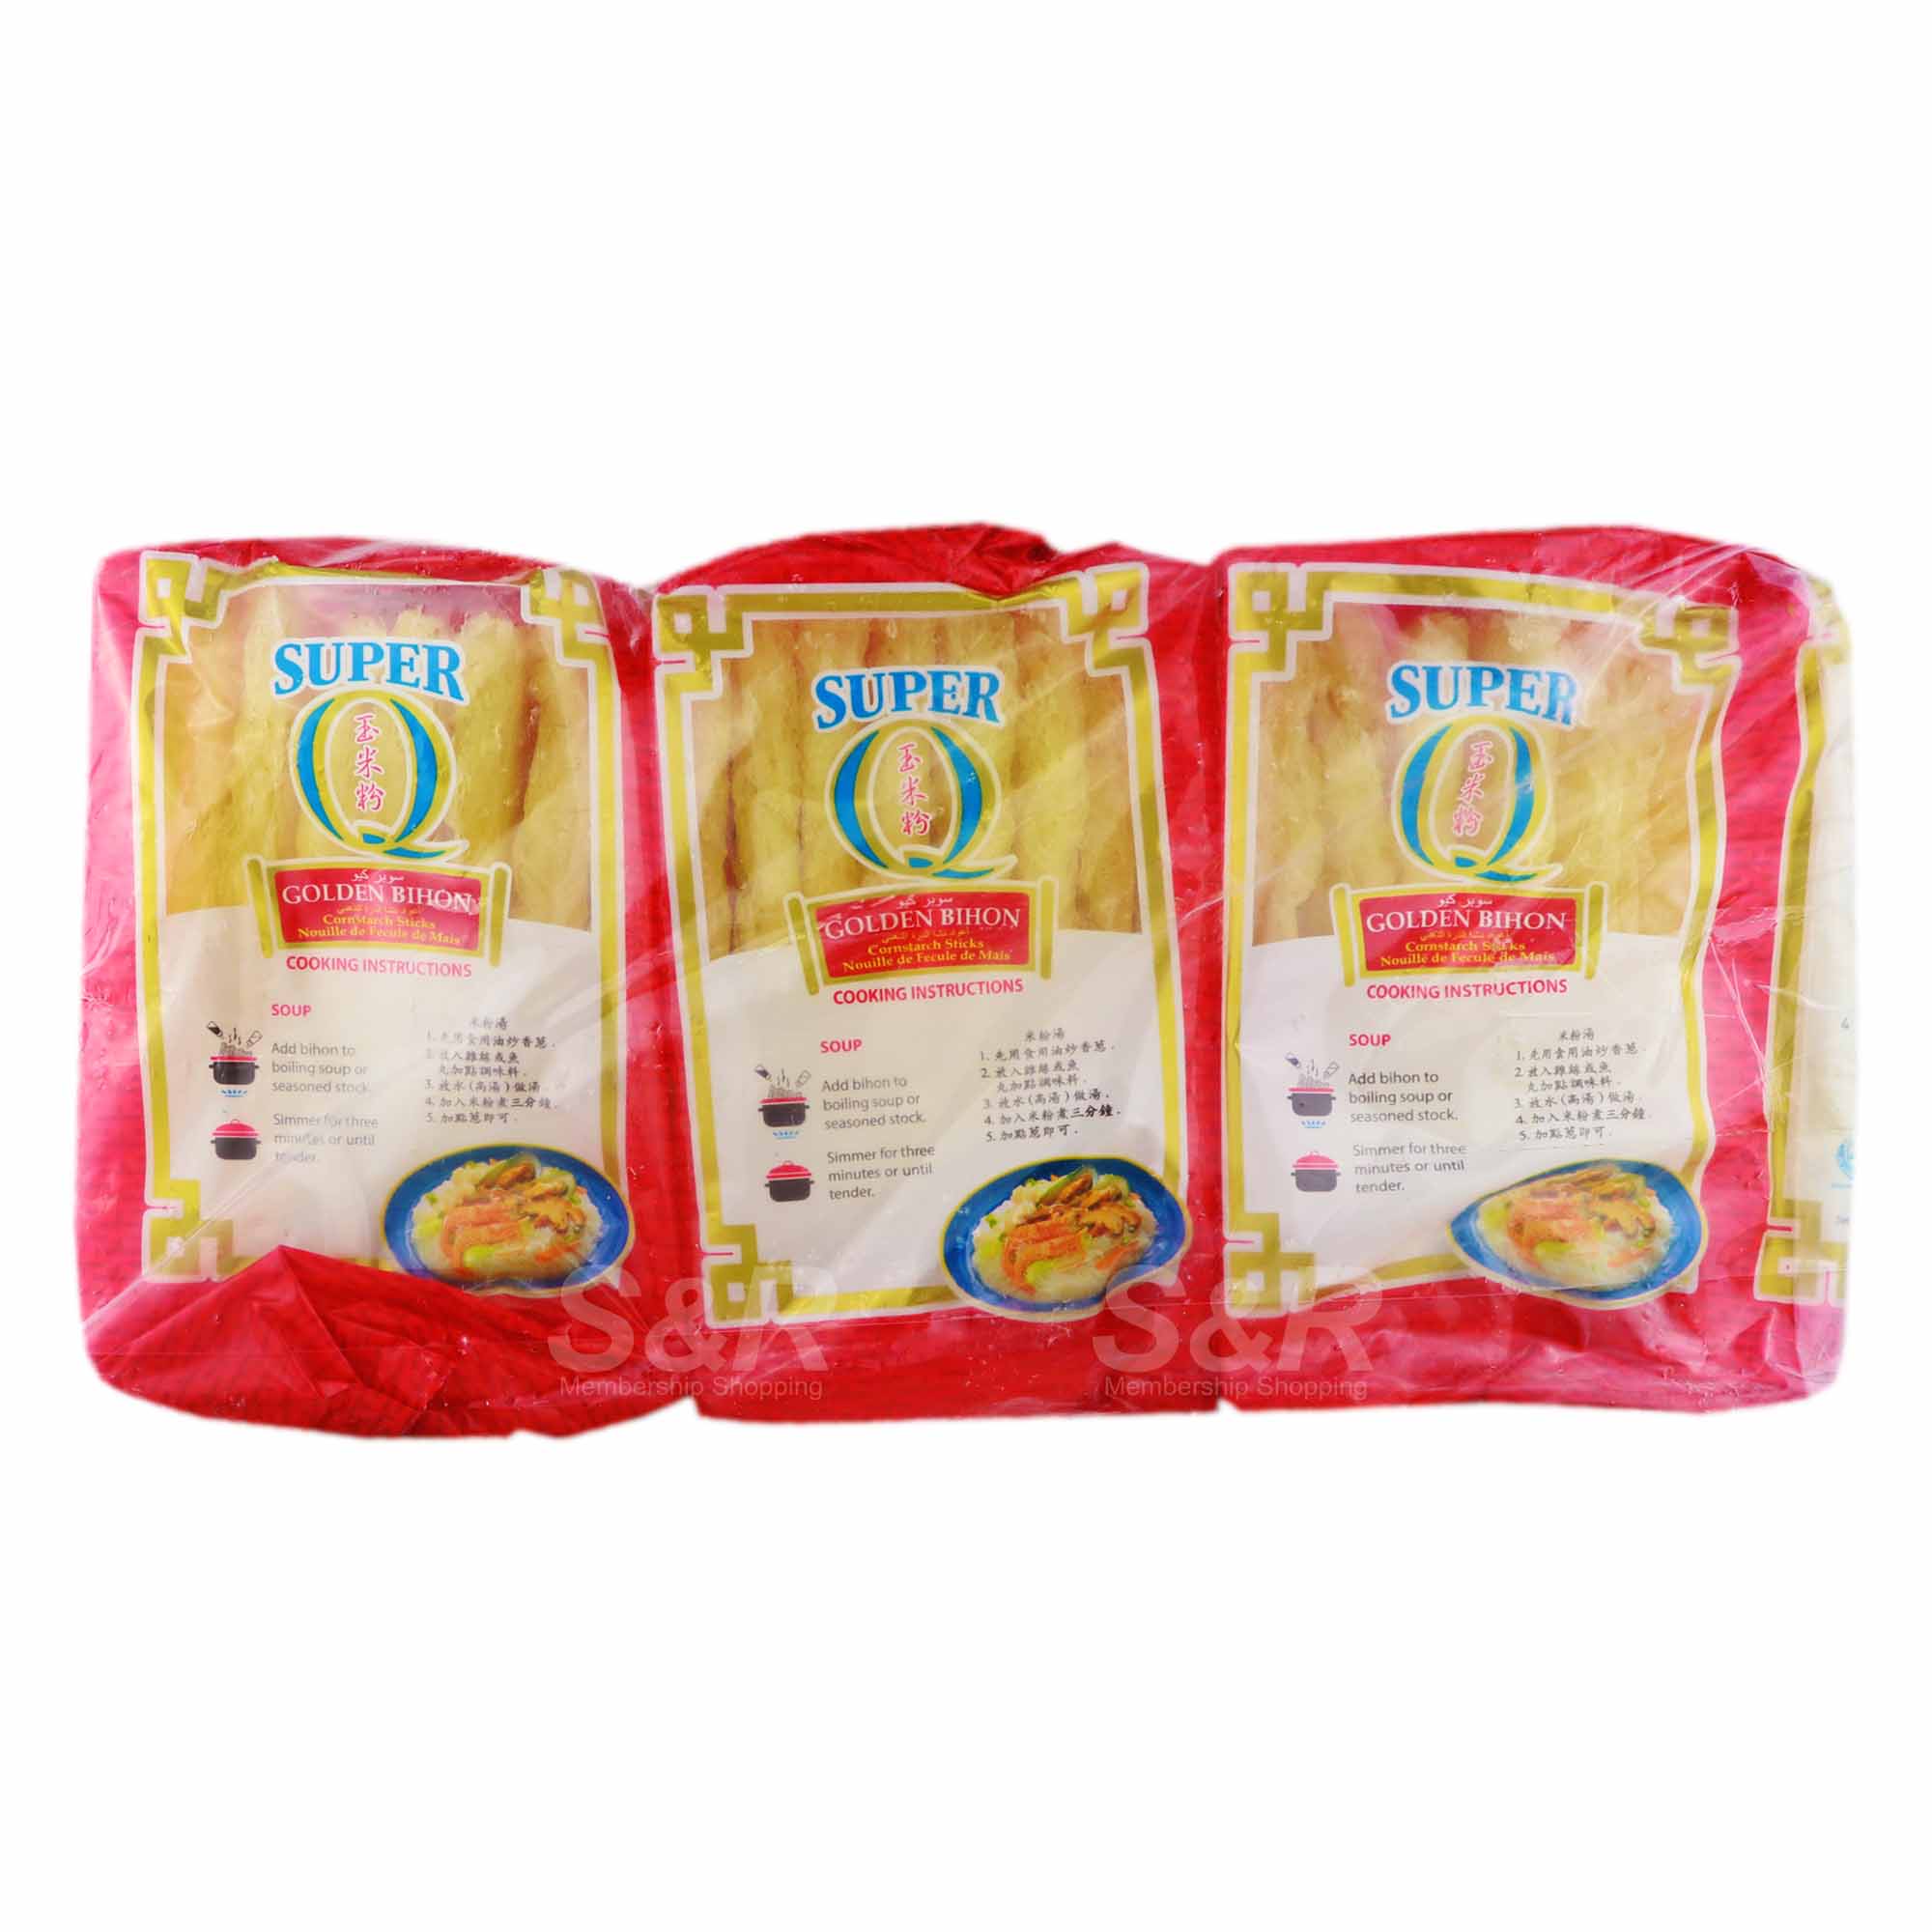 Super Q Golden Bihon 3 packs